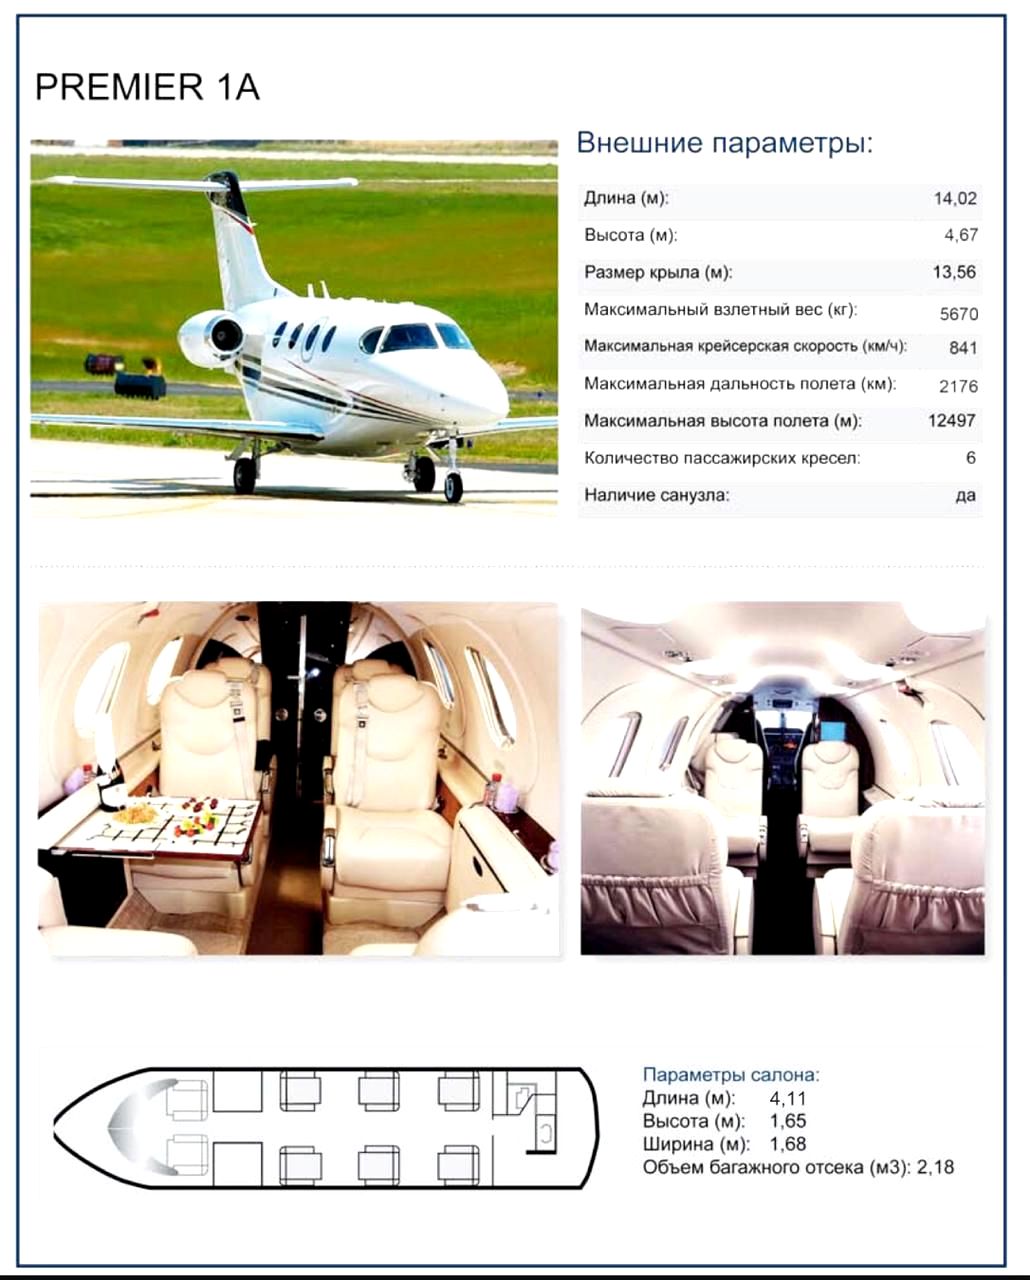 Beechcraft Premier 1A заказать чартерный рейс на самолете